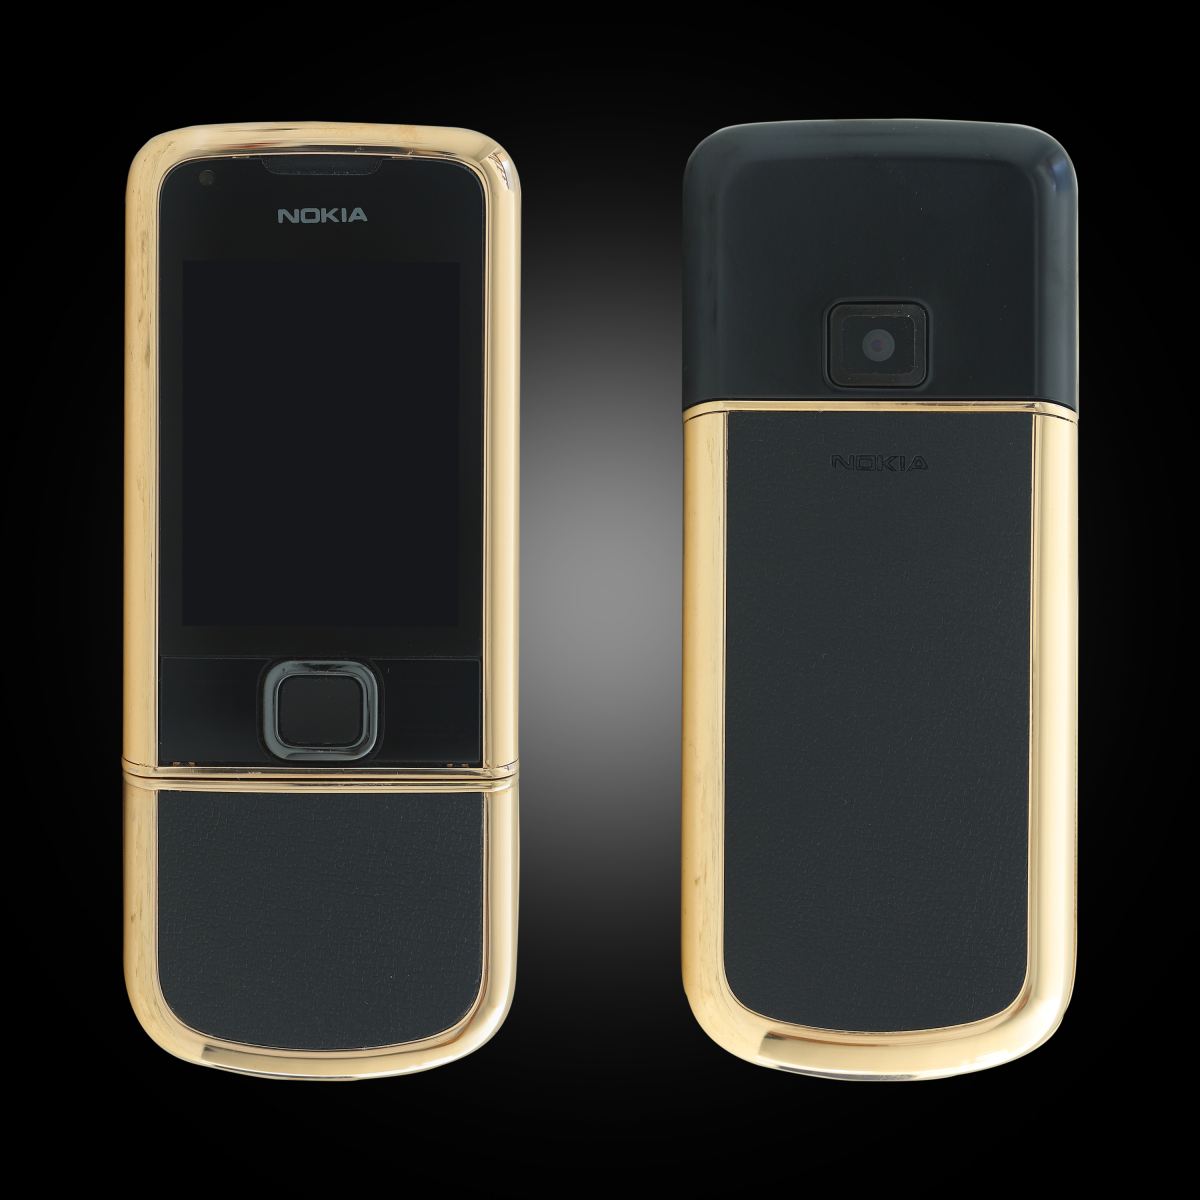 Nokia 8800E Rose Gold: Màu hồng vàng sang trọng, thiết kế tỉ mỉ đến từng chi tiết, Nokia 8800E Rose Gold sẽ khiến bạn cảm thấy không thể rời mắt được. Hãy đến và chiêm ngưỡng hình ảnh liên quan đến sản phẩm này và bạn sẽ thực sự bị mê hoặc!